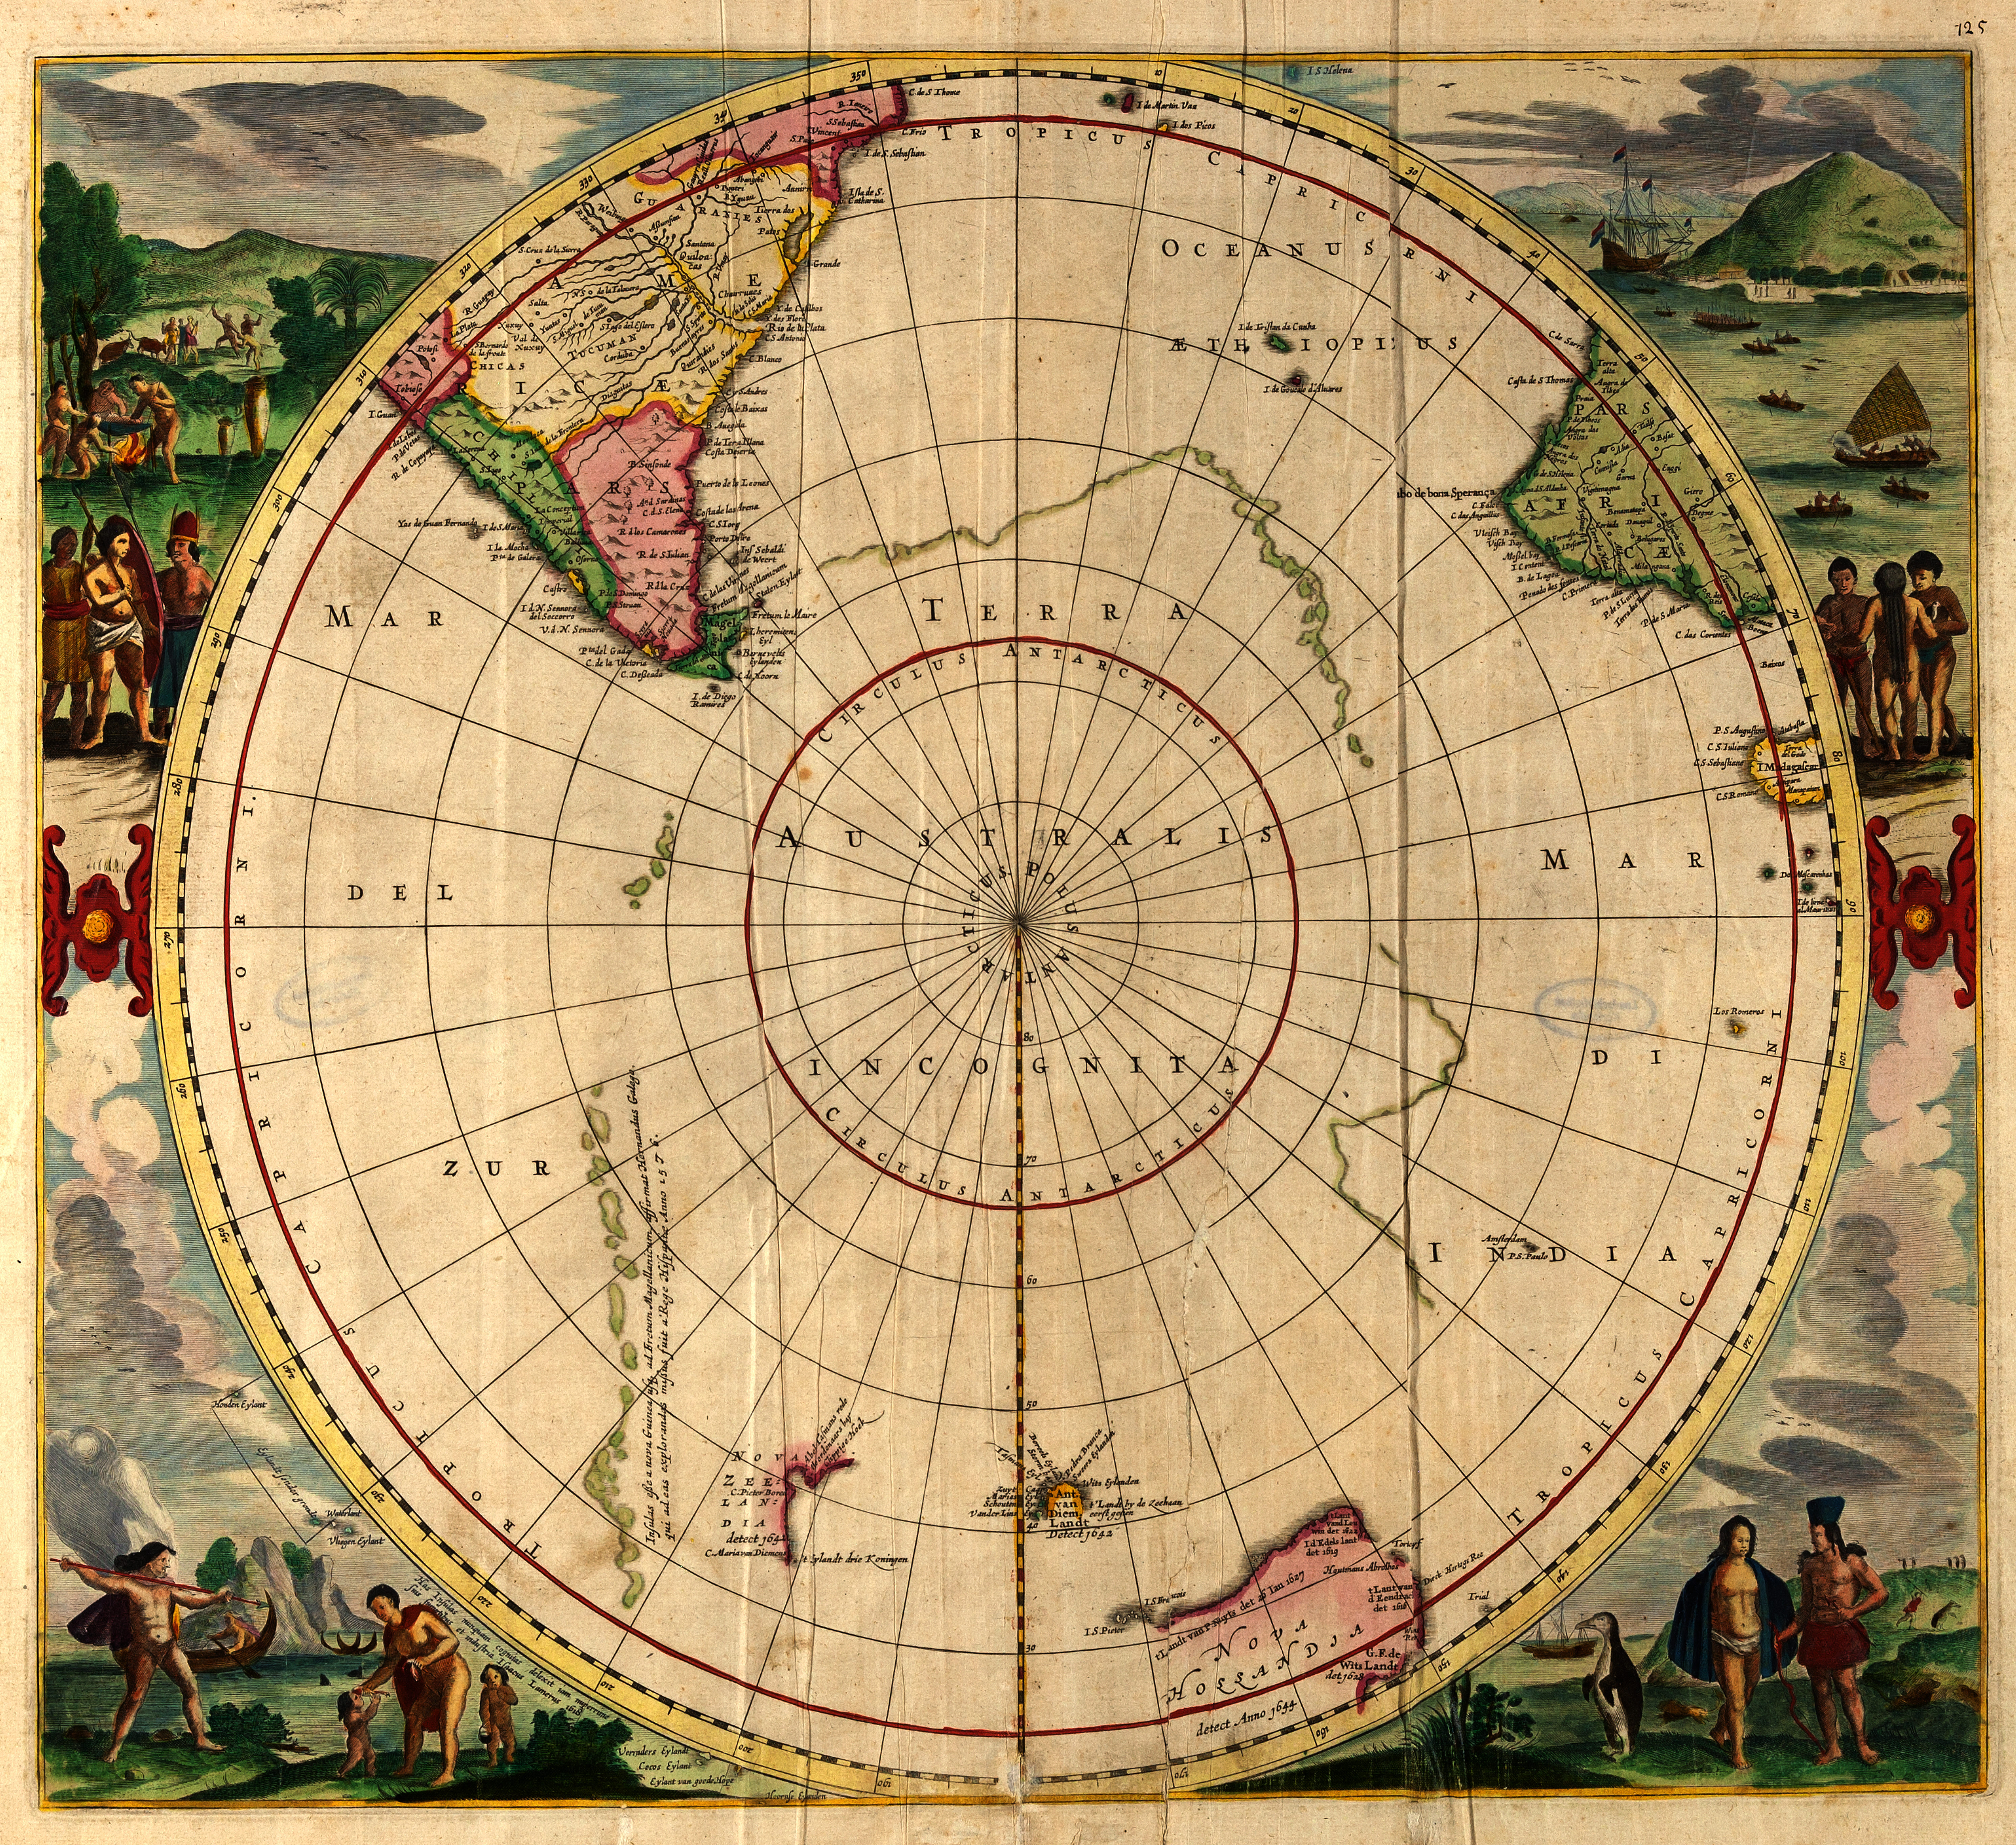 Terra australis incognita. Aus: Atlas minor sive geographia compendiosa qua orbis terrarum per paucas attamen novissimas tabulas ostenditur. - Amsterdam: Visscher, 1694. - Signatur: MO 72 R.